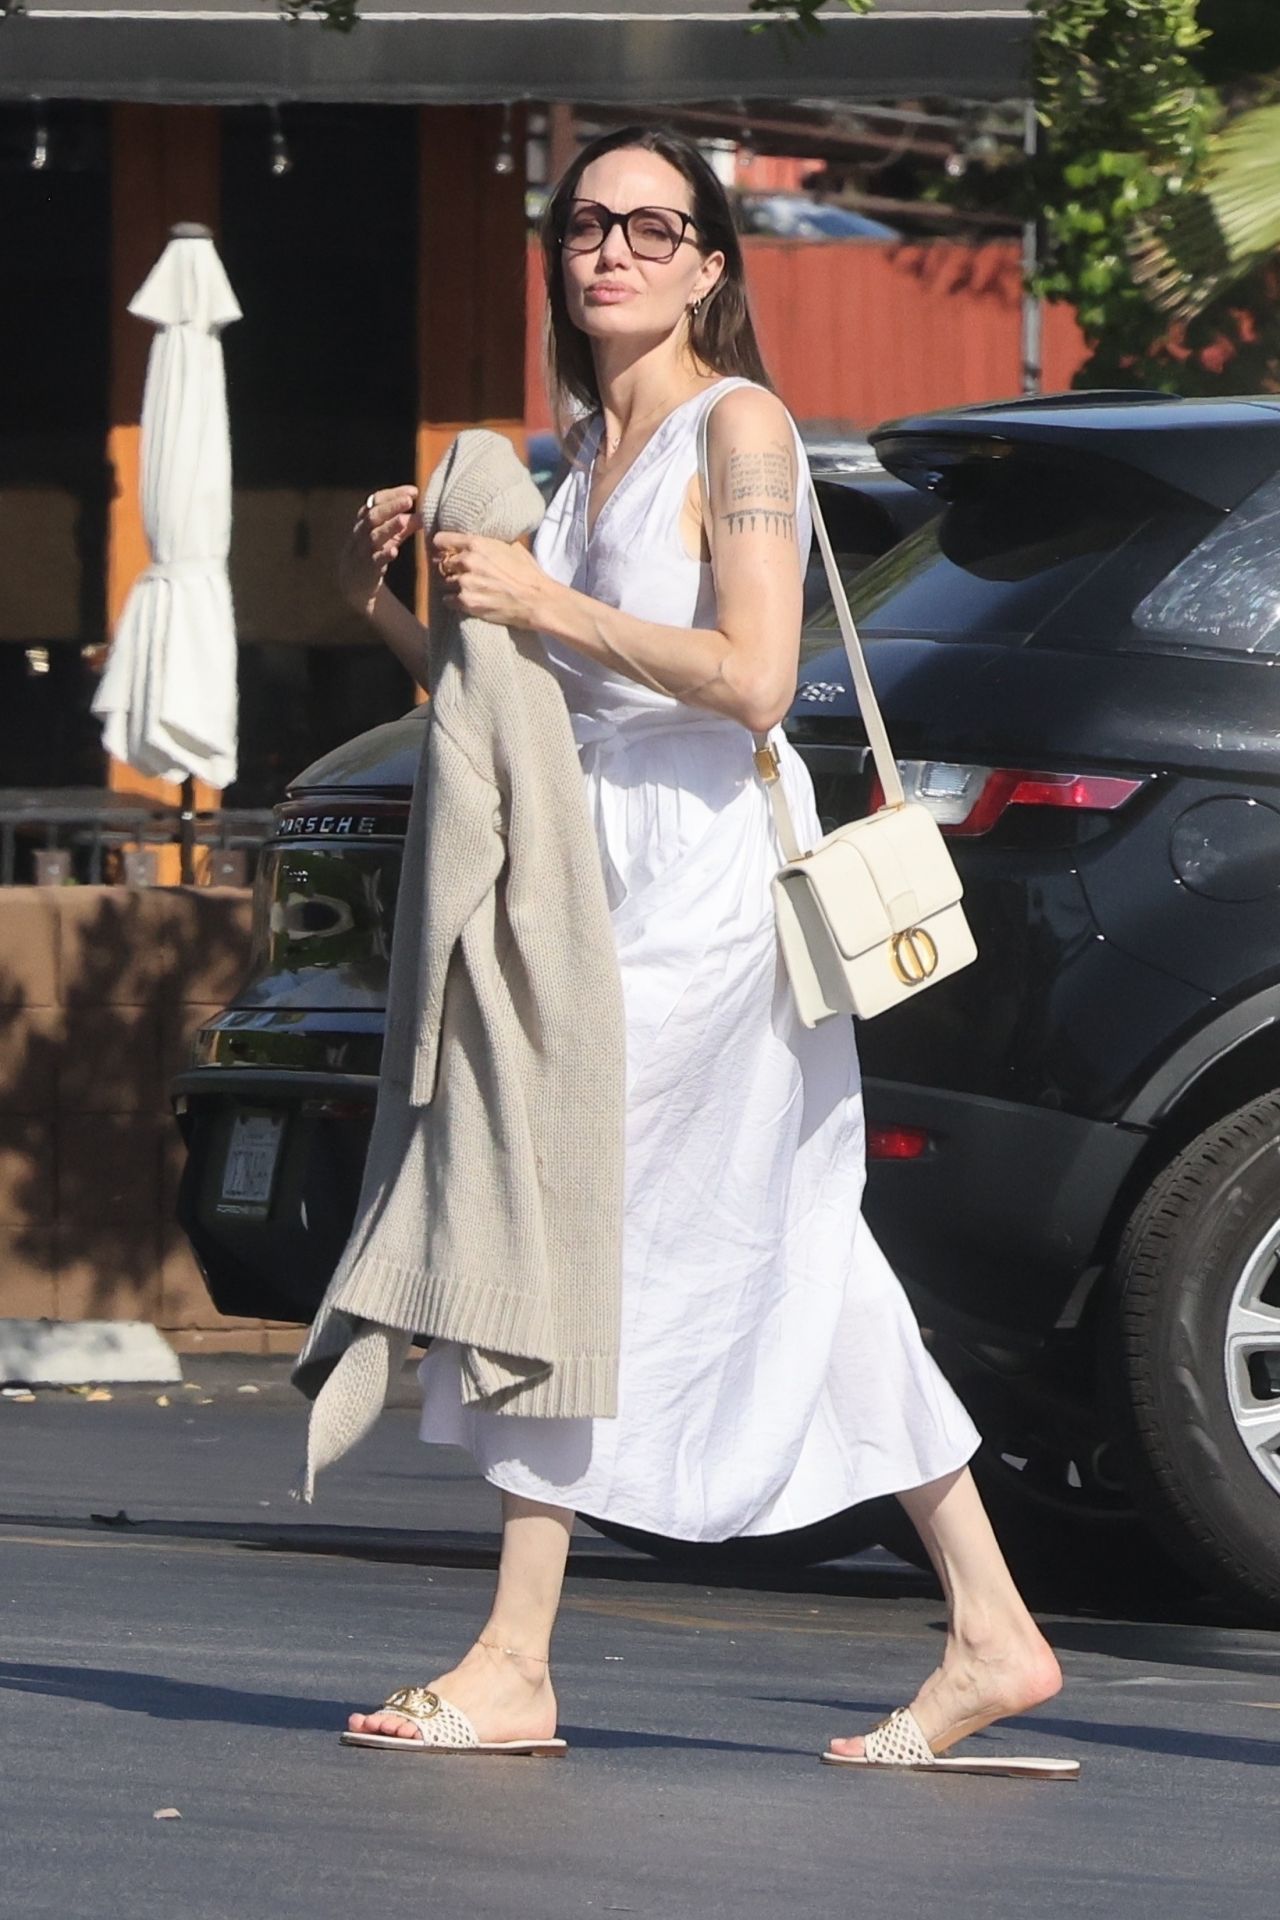 Angelina Jolie Style, Clothes, Outfits and Fashion • CelebMafia